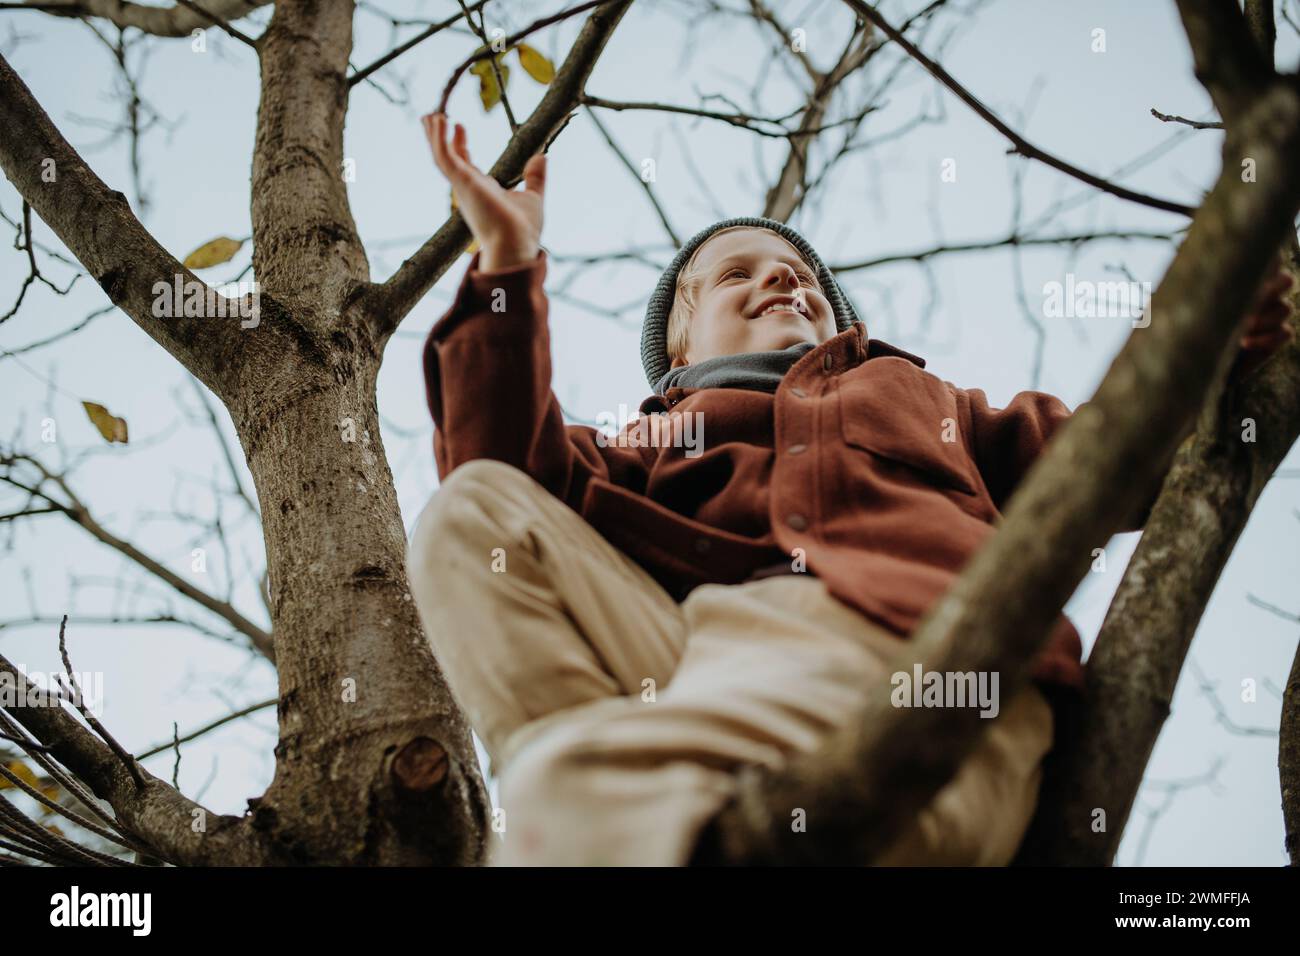 Glücklicher Junge, der an den ersten Frühlingstagen auf dem Baum spielt. Ein kleines Kind klettert auf den Baum, sitzt auf einem Ast und lächelt. Gartenaktivitäten im Freien für junge Kinder Stockfoto